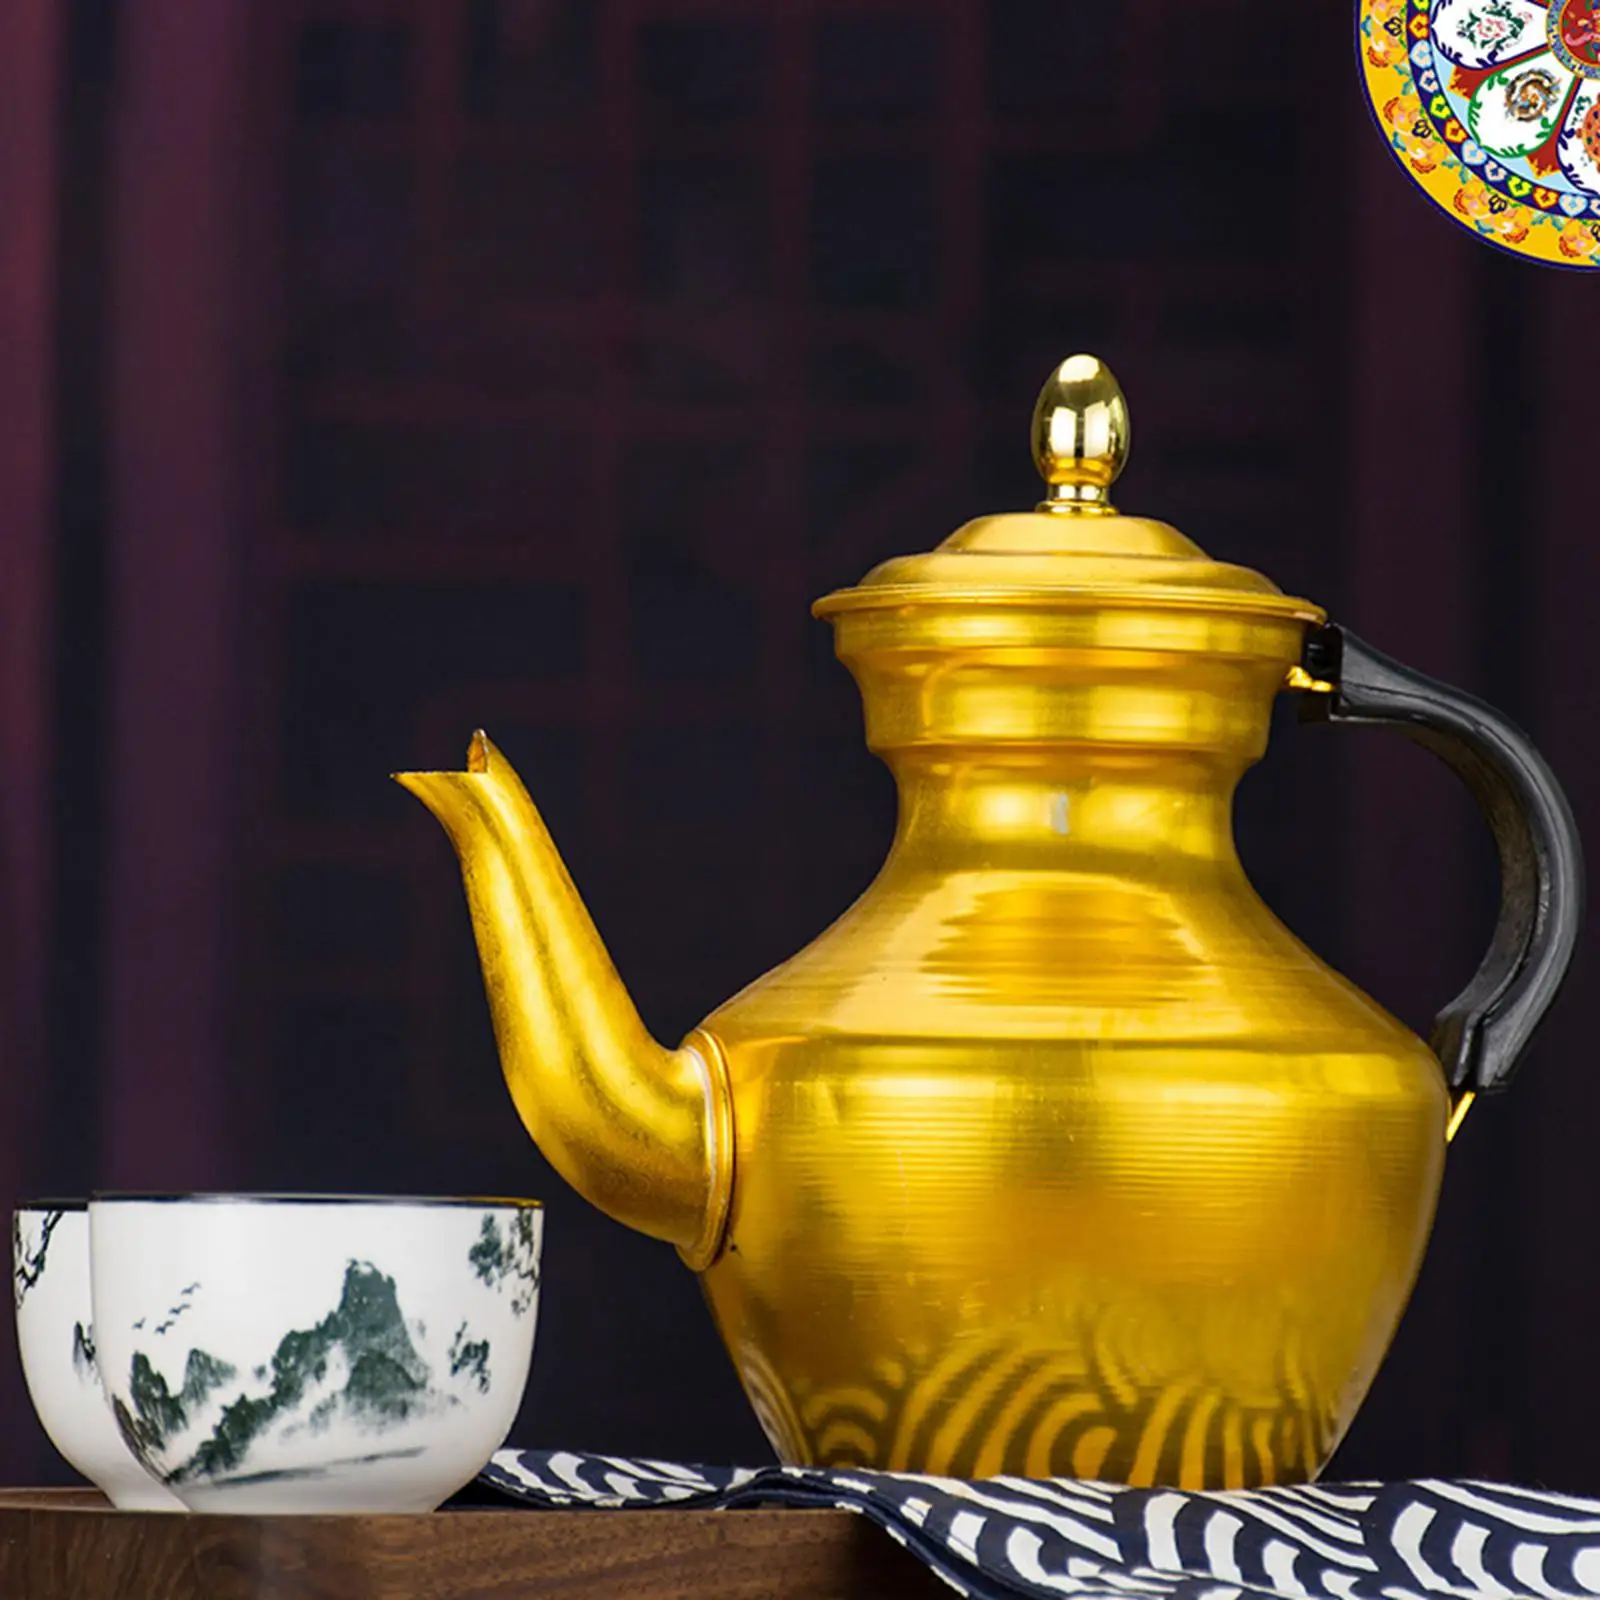 Multifunction Gooseneck Teapot Tibetan Style Aluminum Tea Kettle Milk Tea Pot Water Kettle for Restaurant Home Kitchen